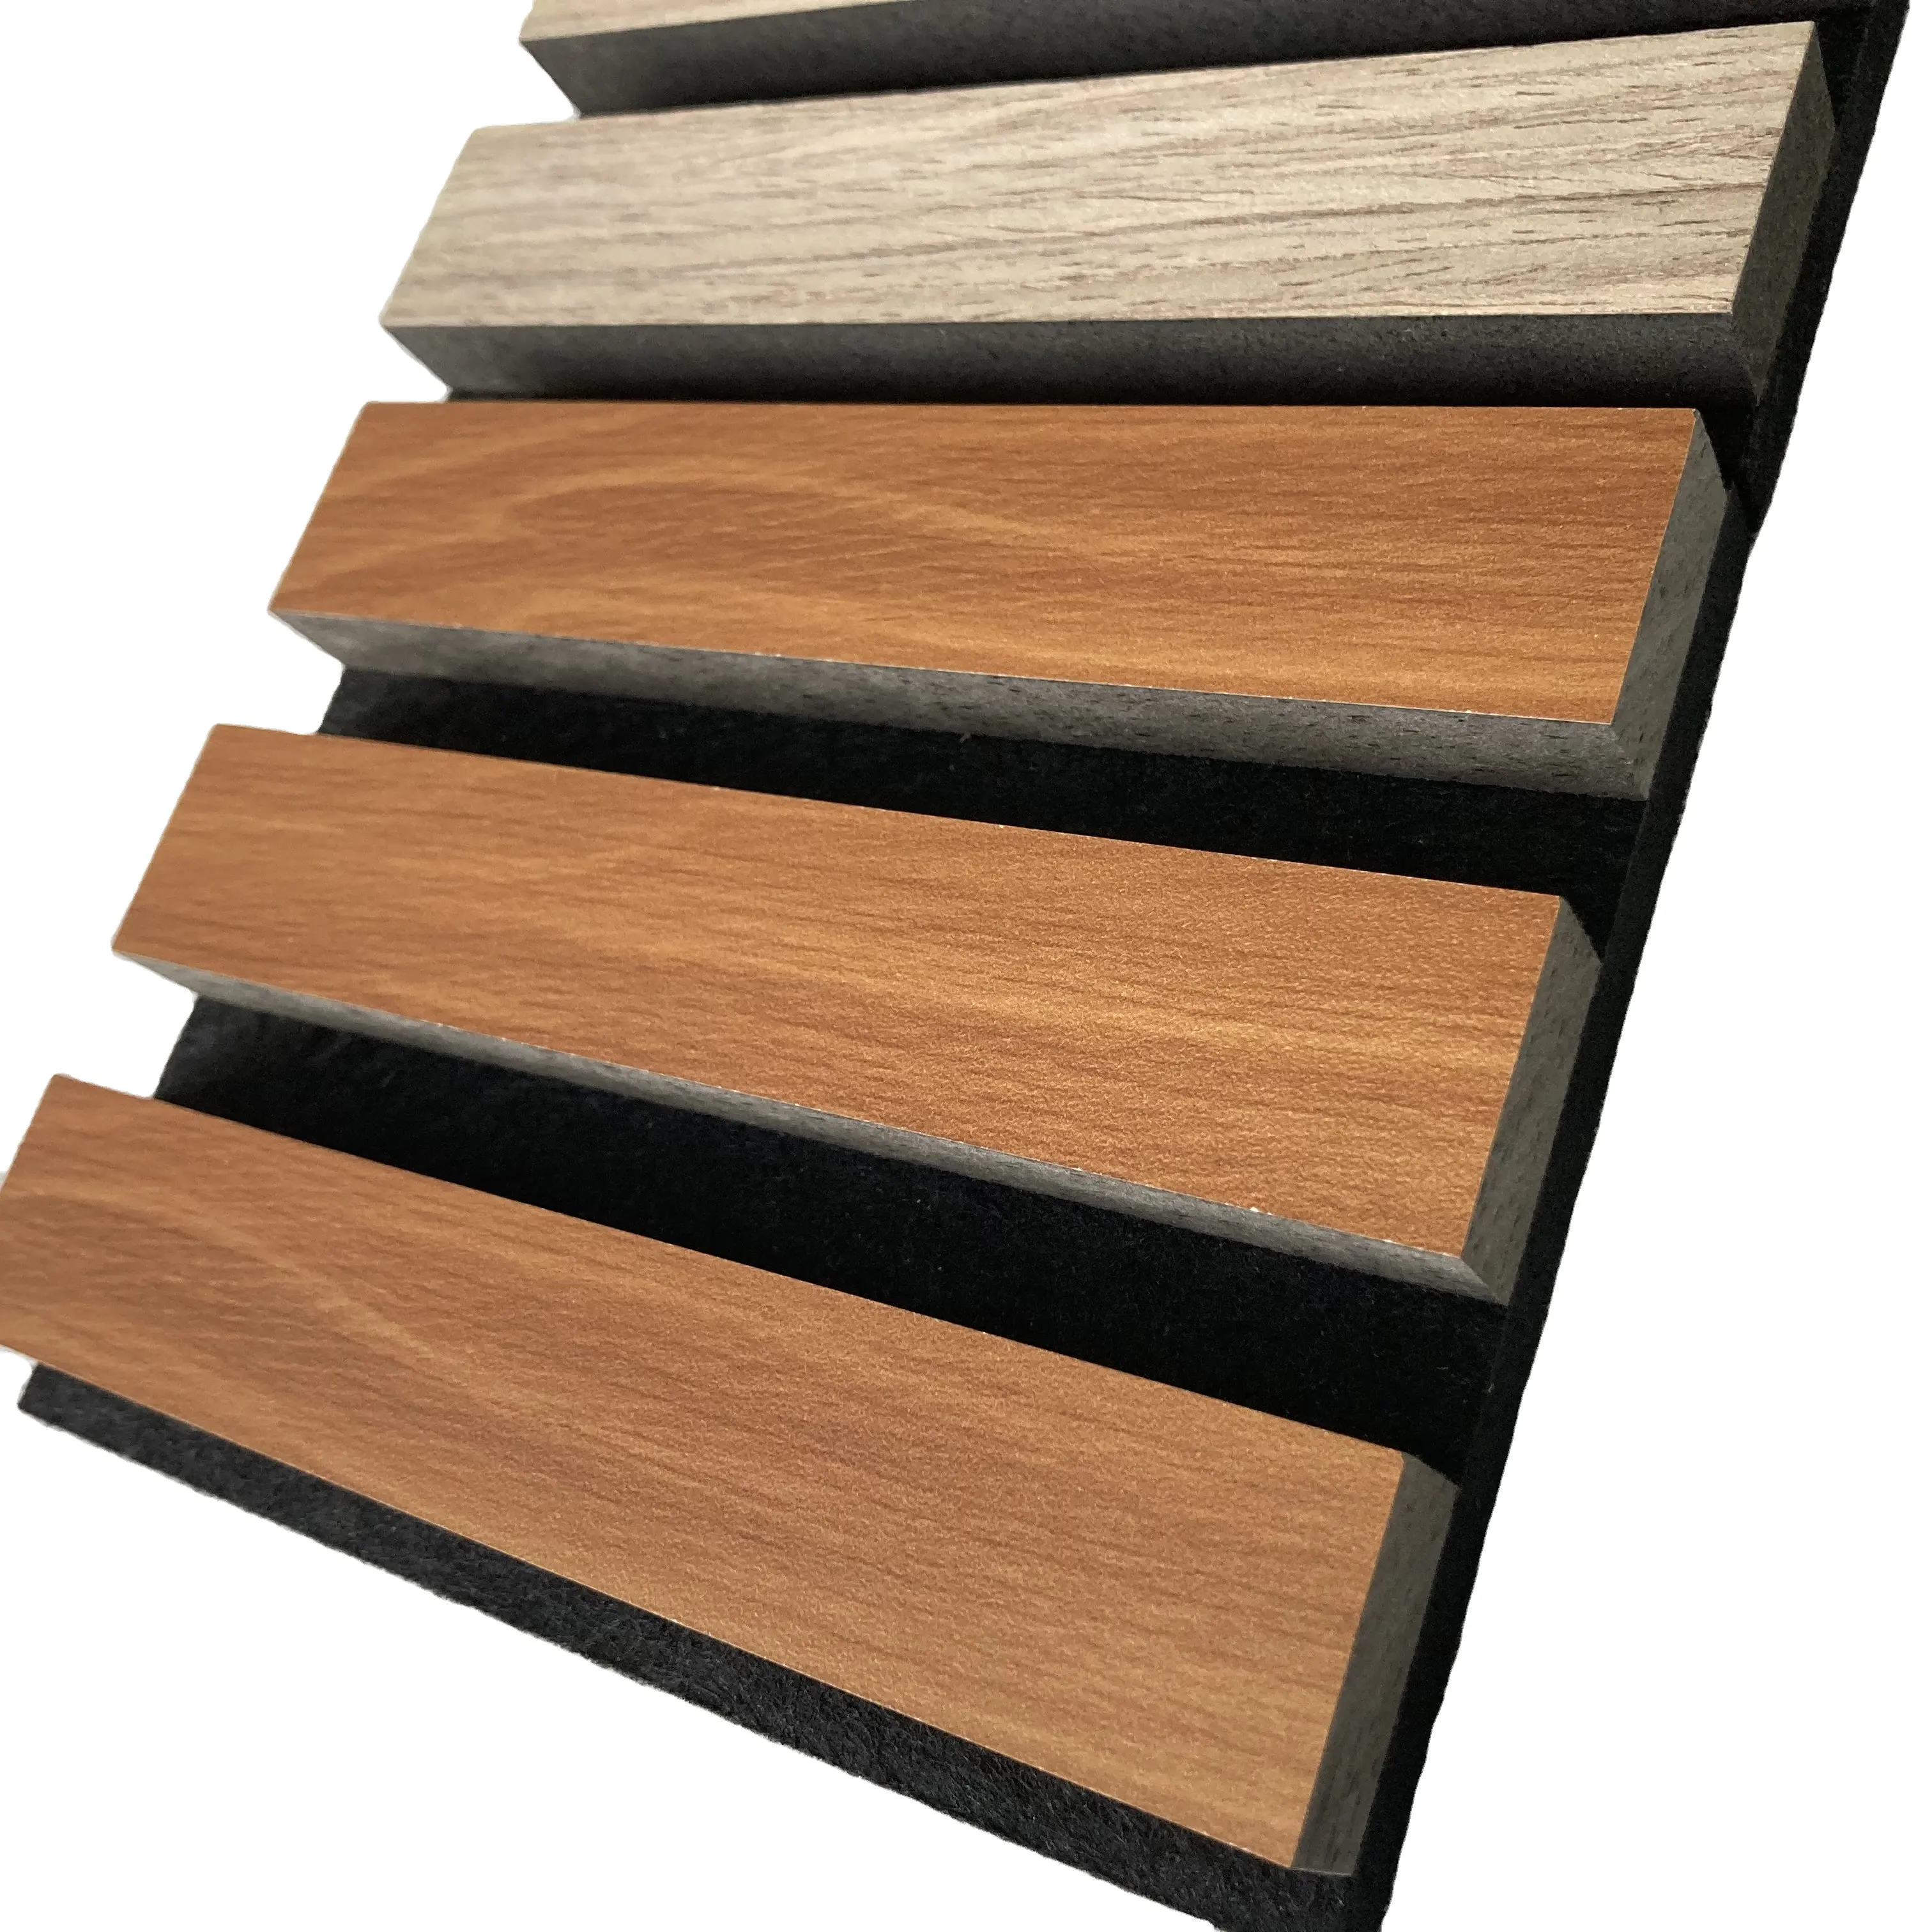 FOJU Factory Proveedores Modelo de madera maciza Roble natural Listón de madera acústica Paneles de pared insonorizados